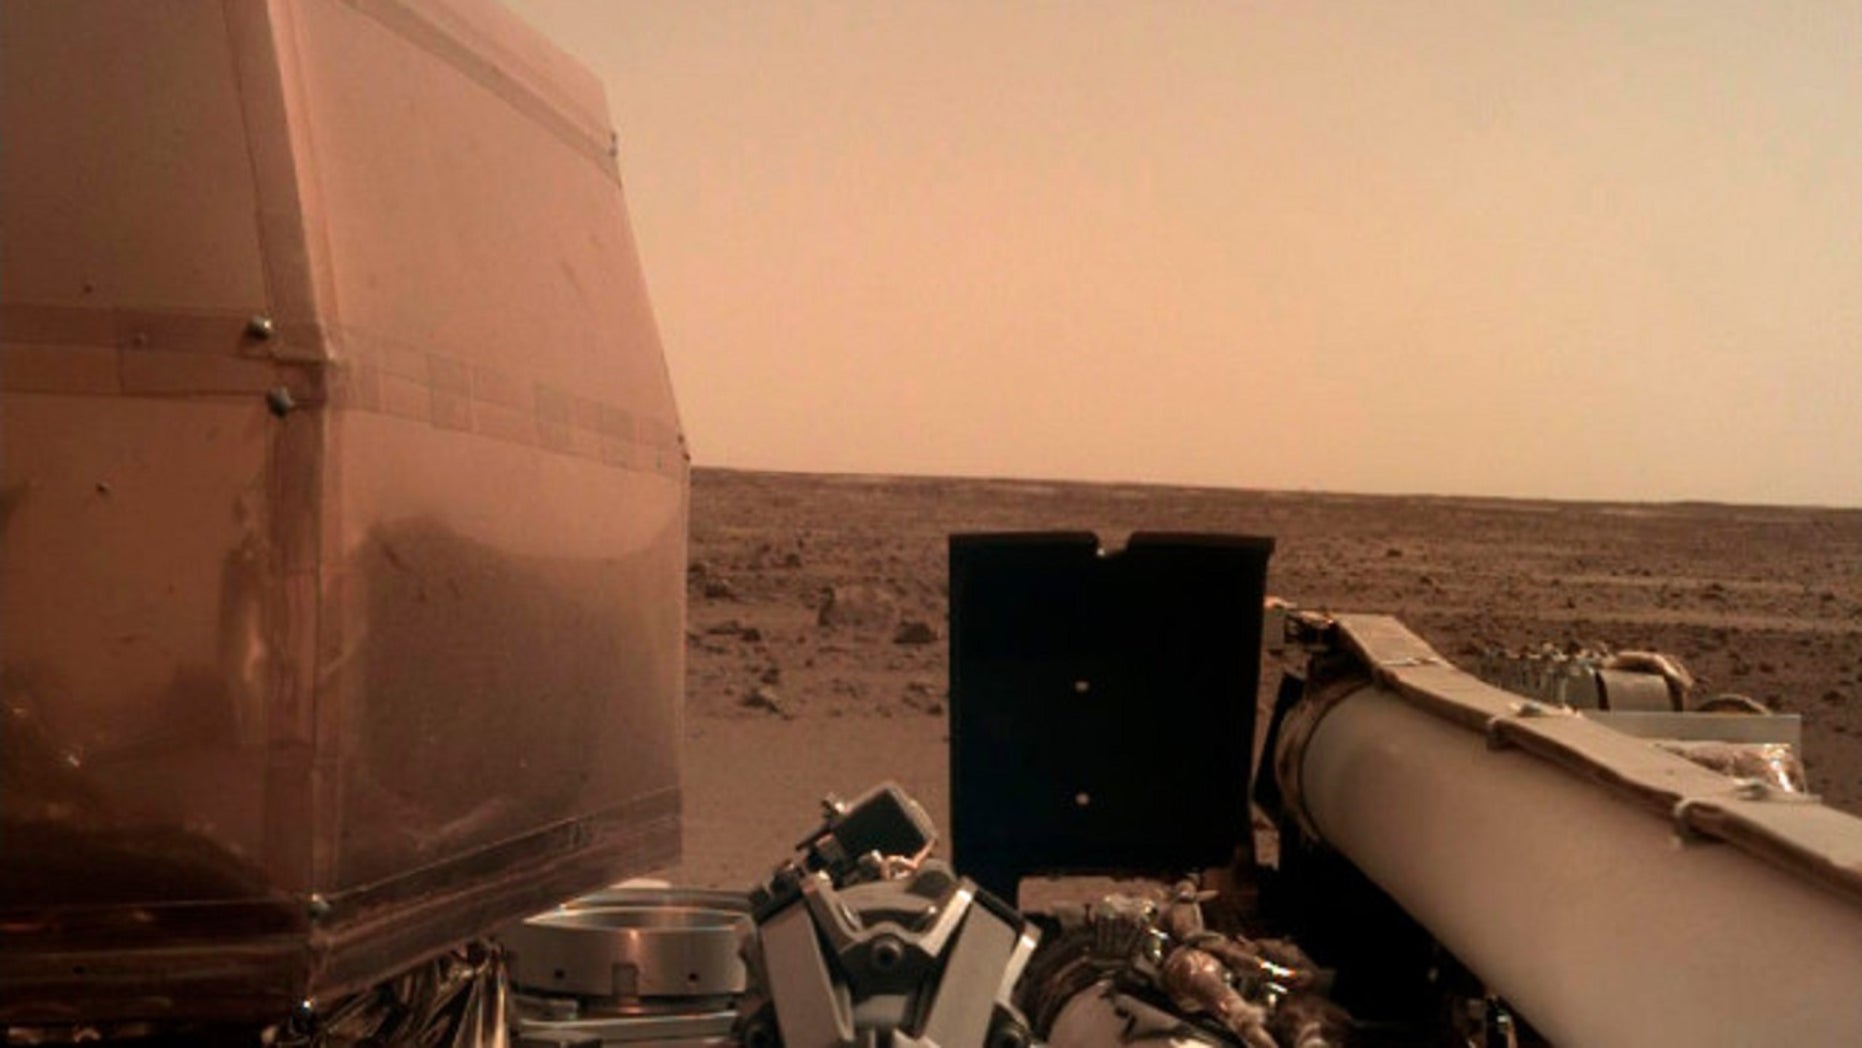 NASA Spacecraft, Insight, landed on Mars on Monday. 